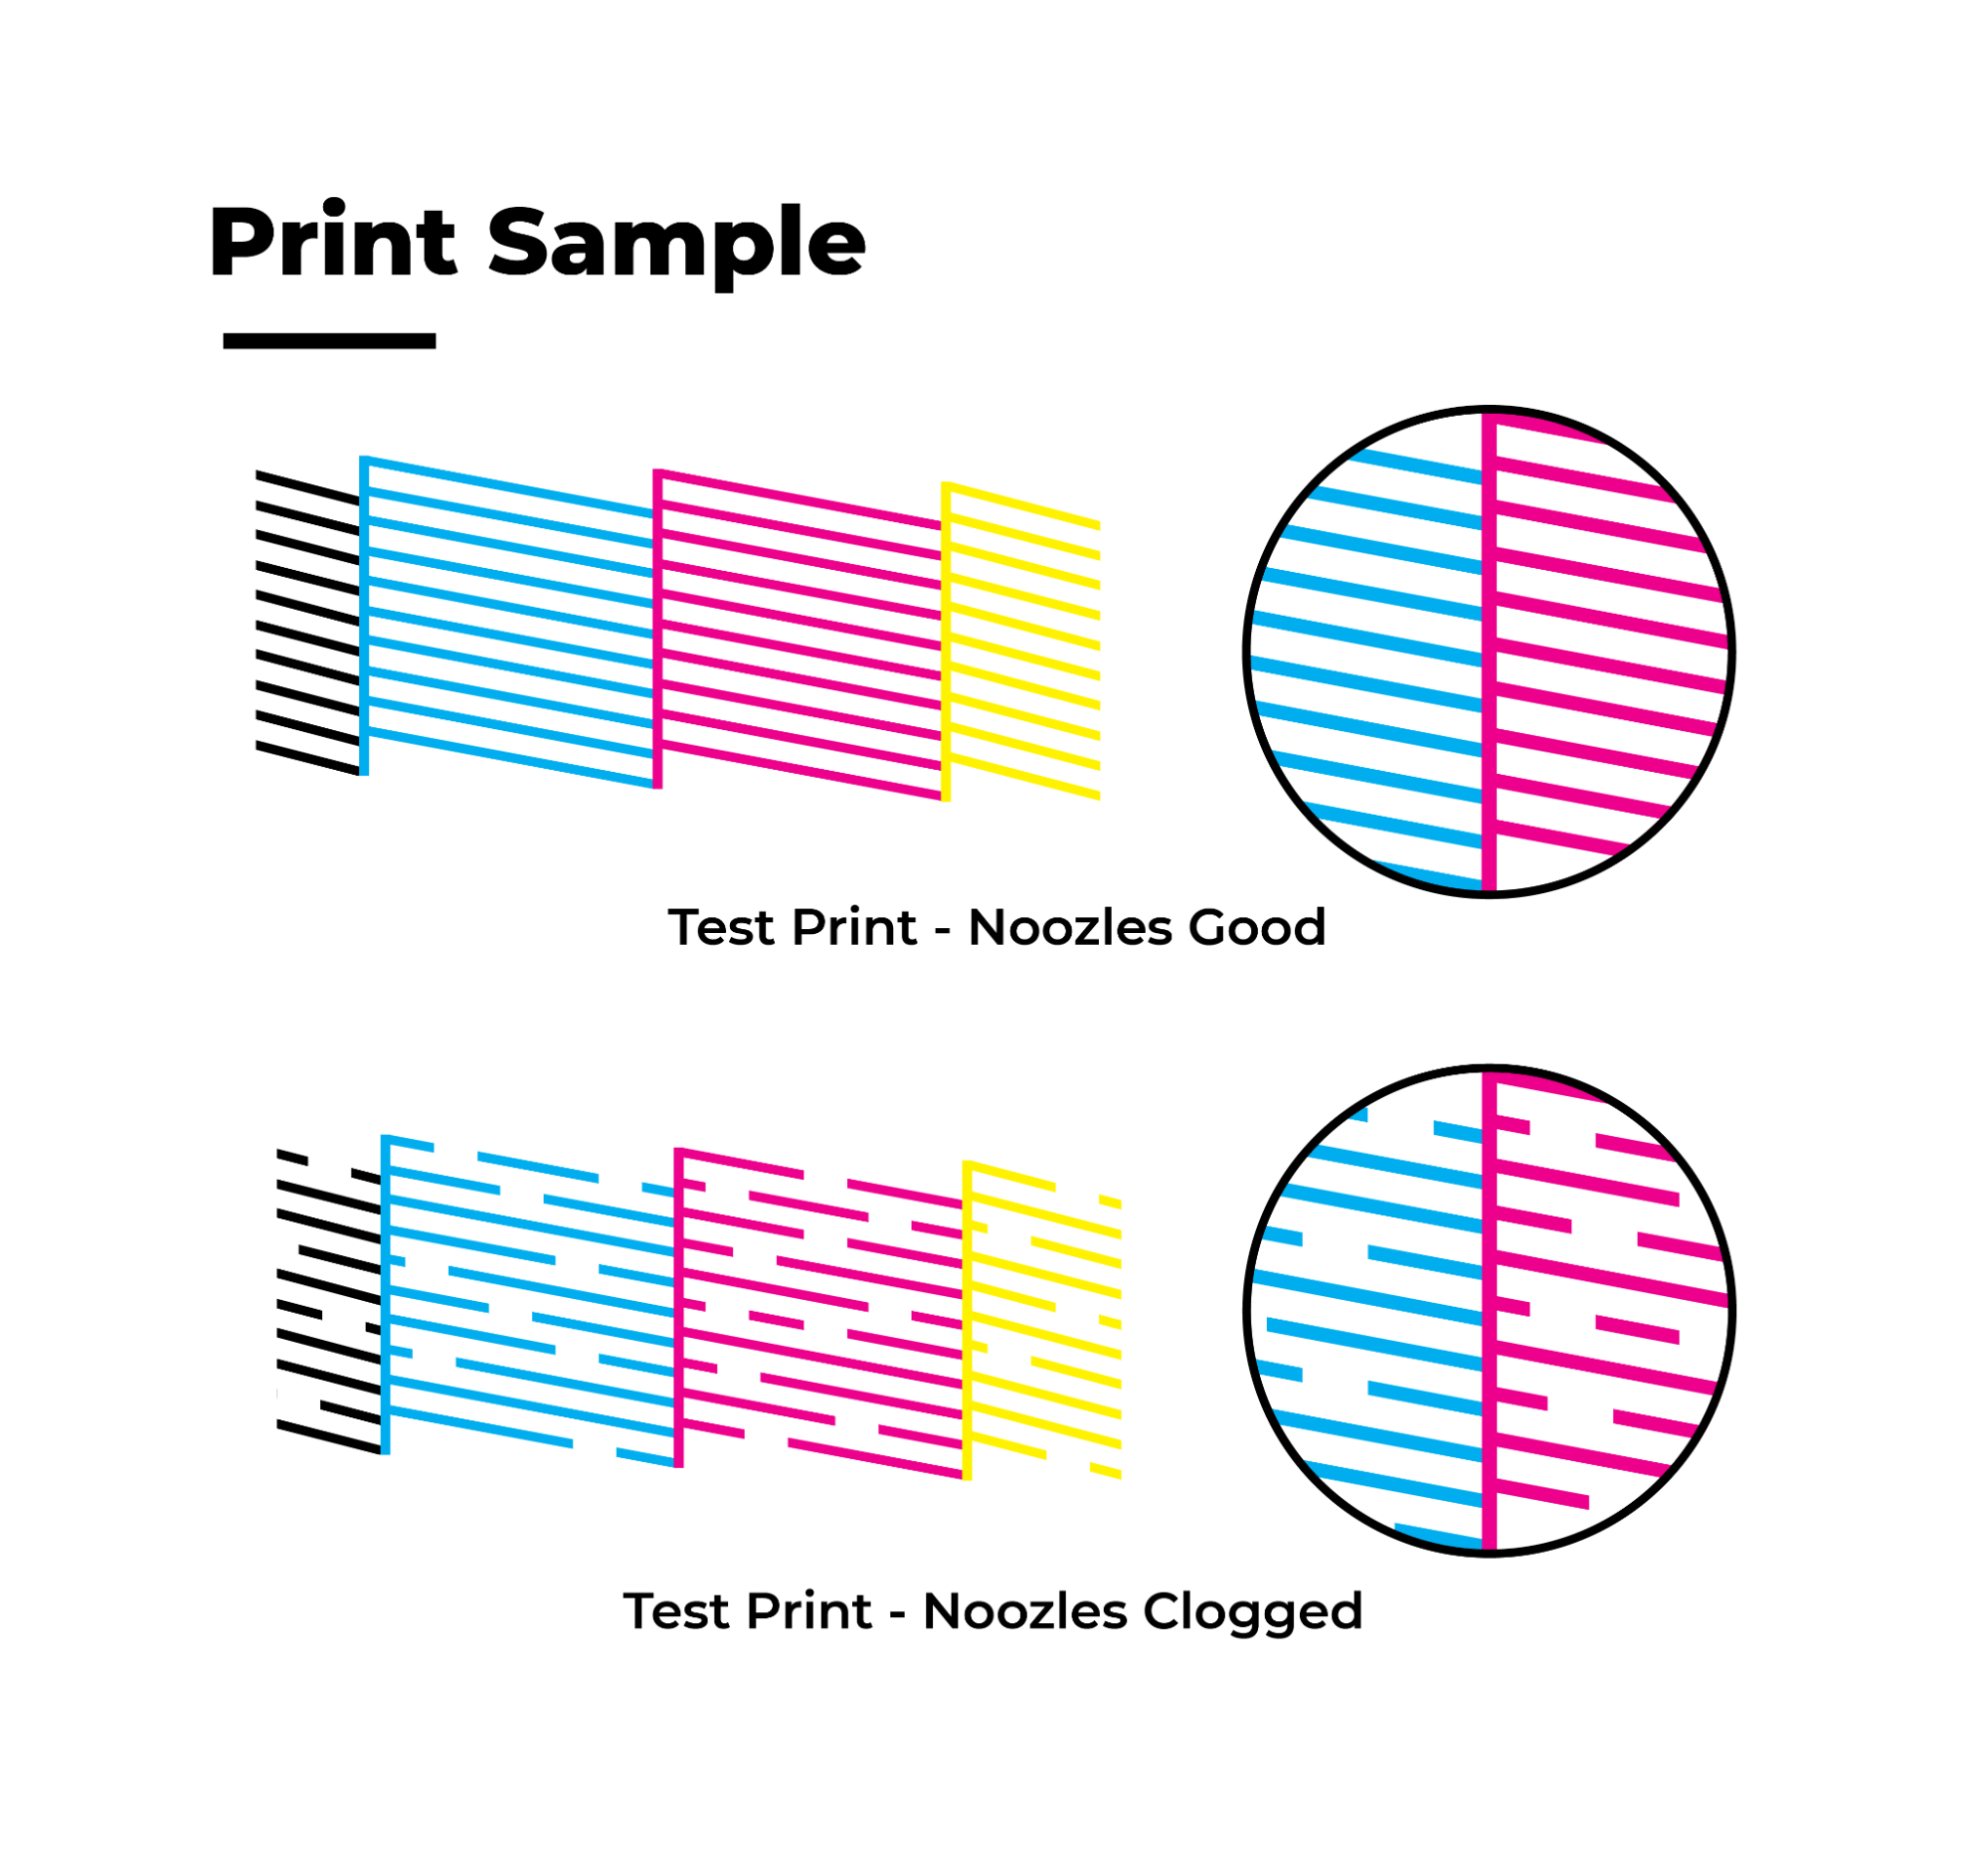 Image of print samples